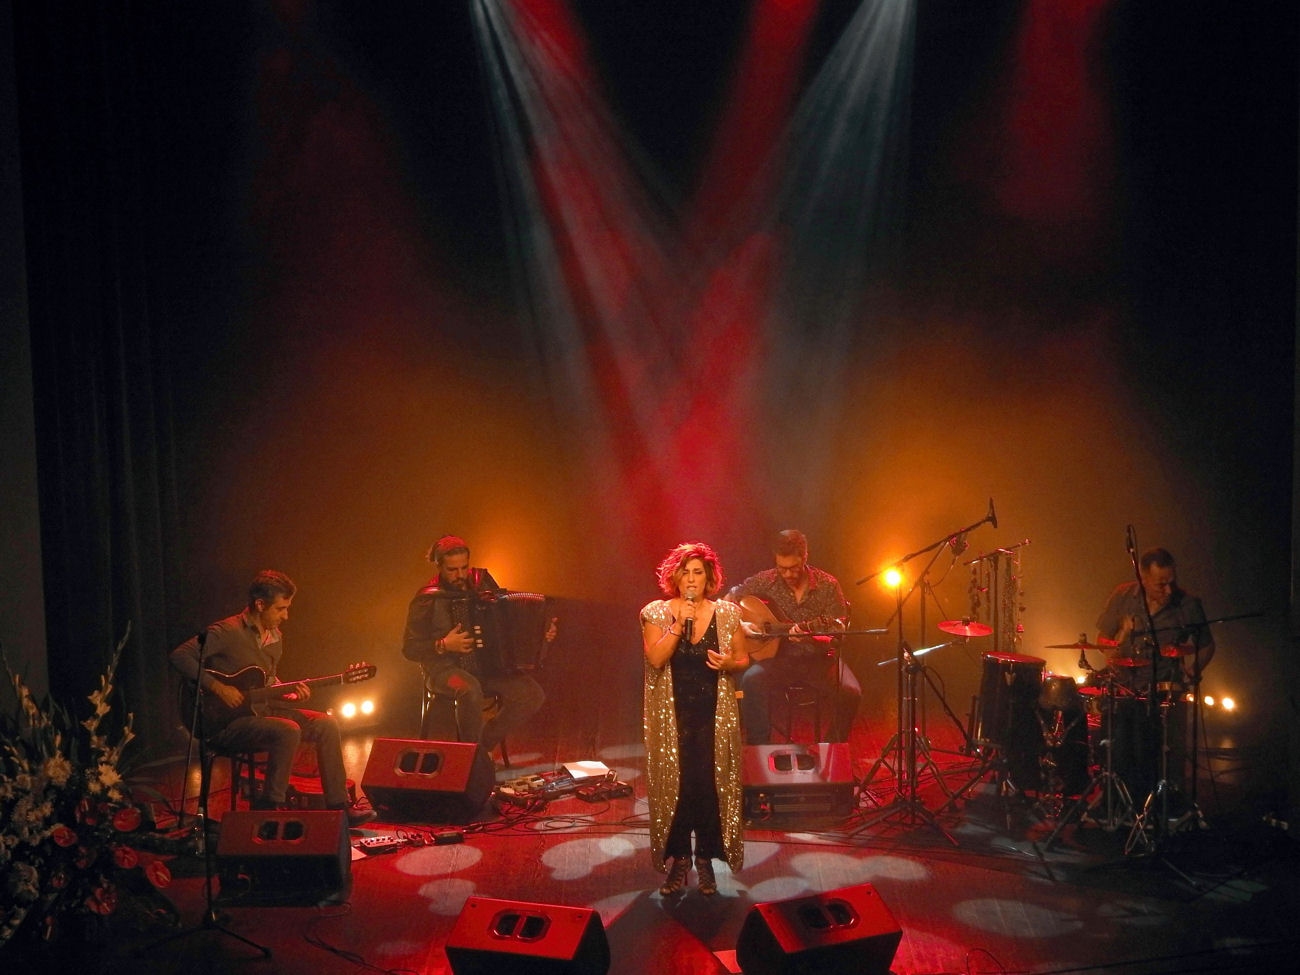 Śpiewaczka na scenie czerwone światło oświetla scenę obok reszta zespołu muzycznego siedzi na scenie i gra